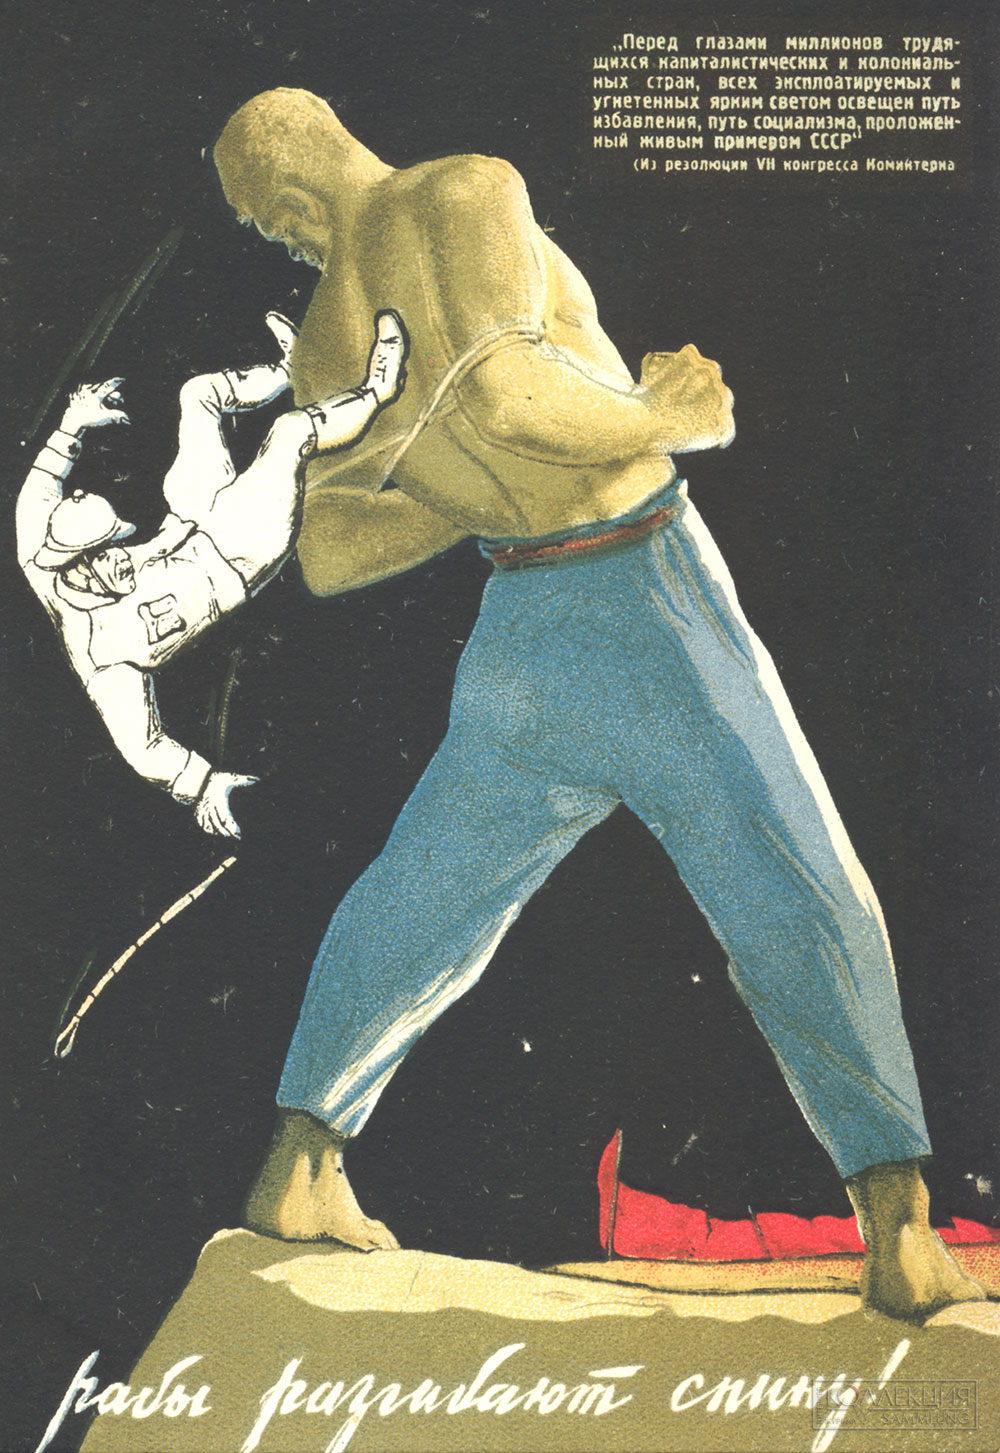 Художник В. Иванов. Рабы разгибают спину. Издательство "Искусство", 1939